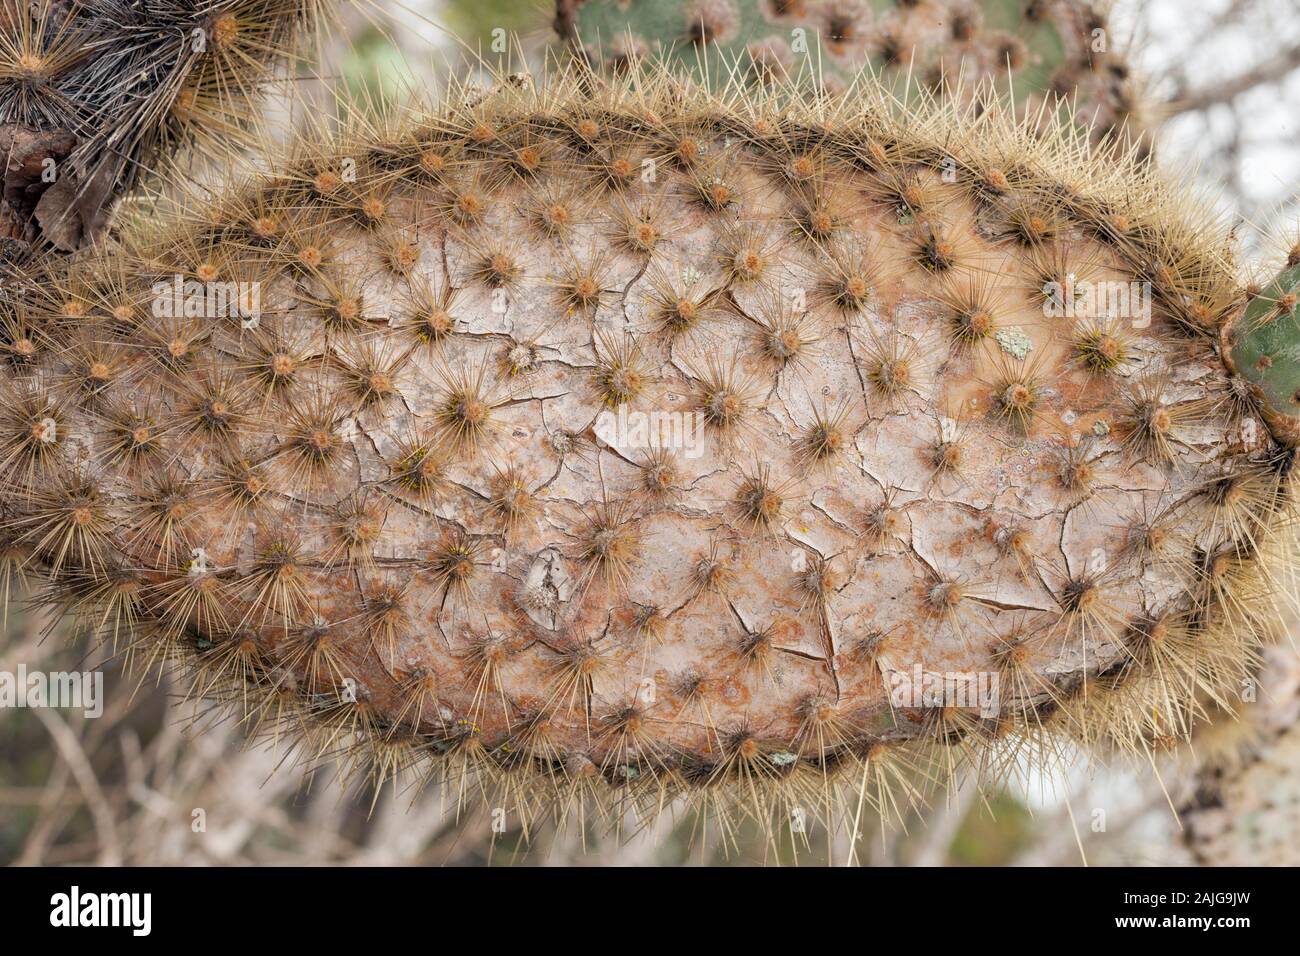 Nahaufnahme von Opuntia (feigenkaktus) Kaktus auf Santa Cruz Island, Galapagos, Ecuador. Stockfoto